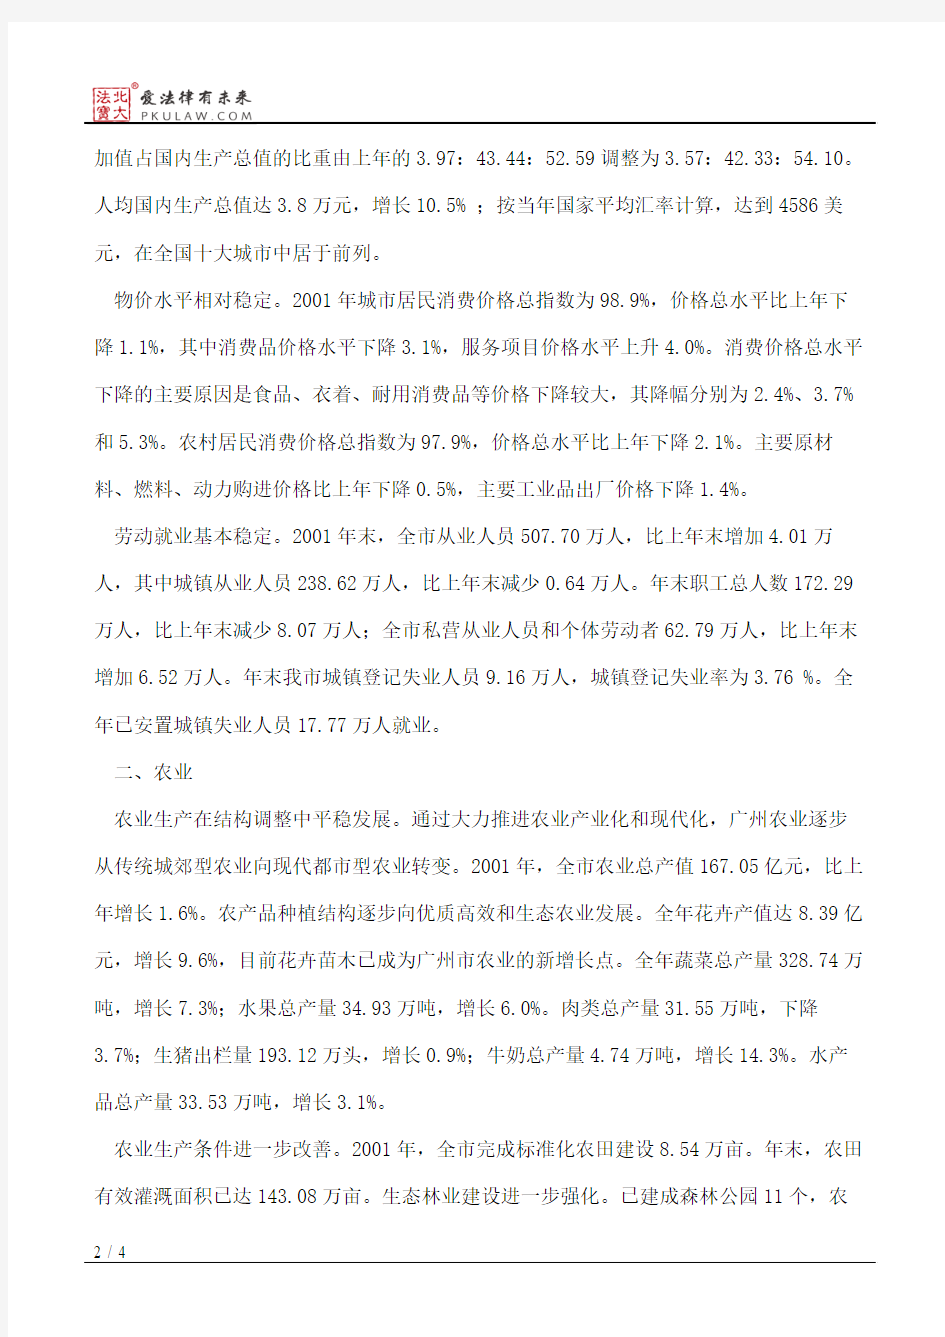 2001年广州市国民经济和社会发展统计公报